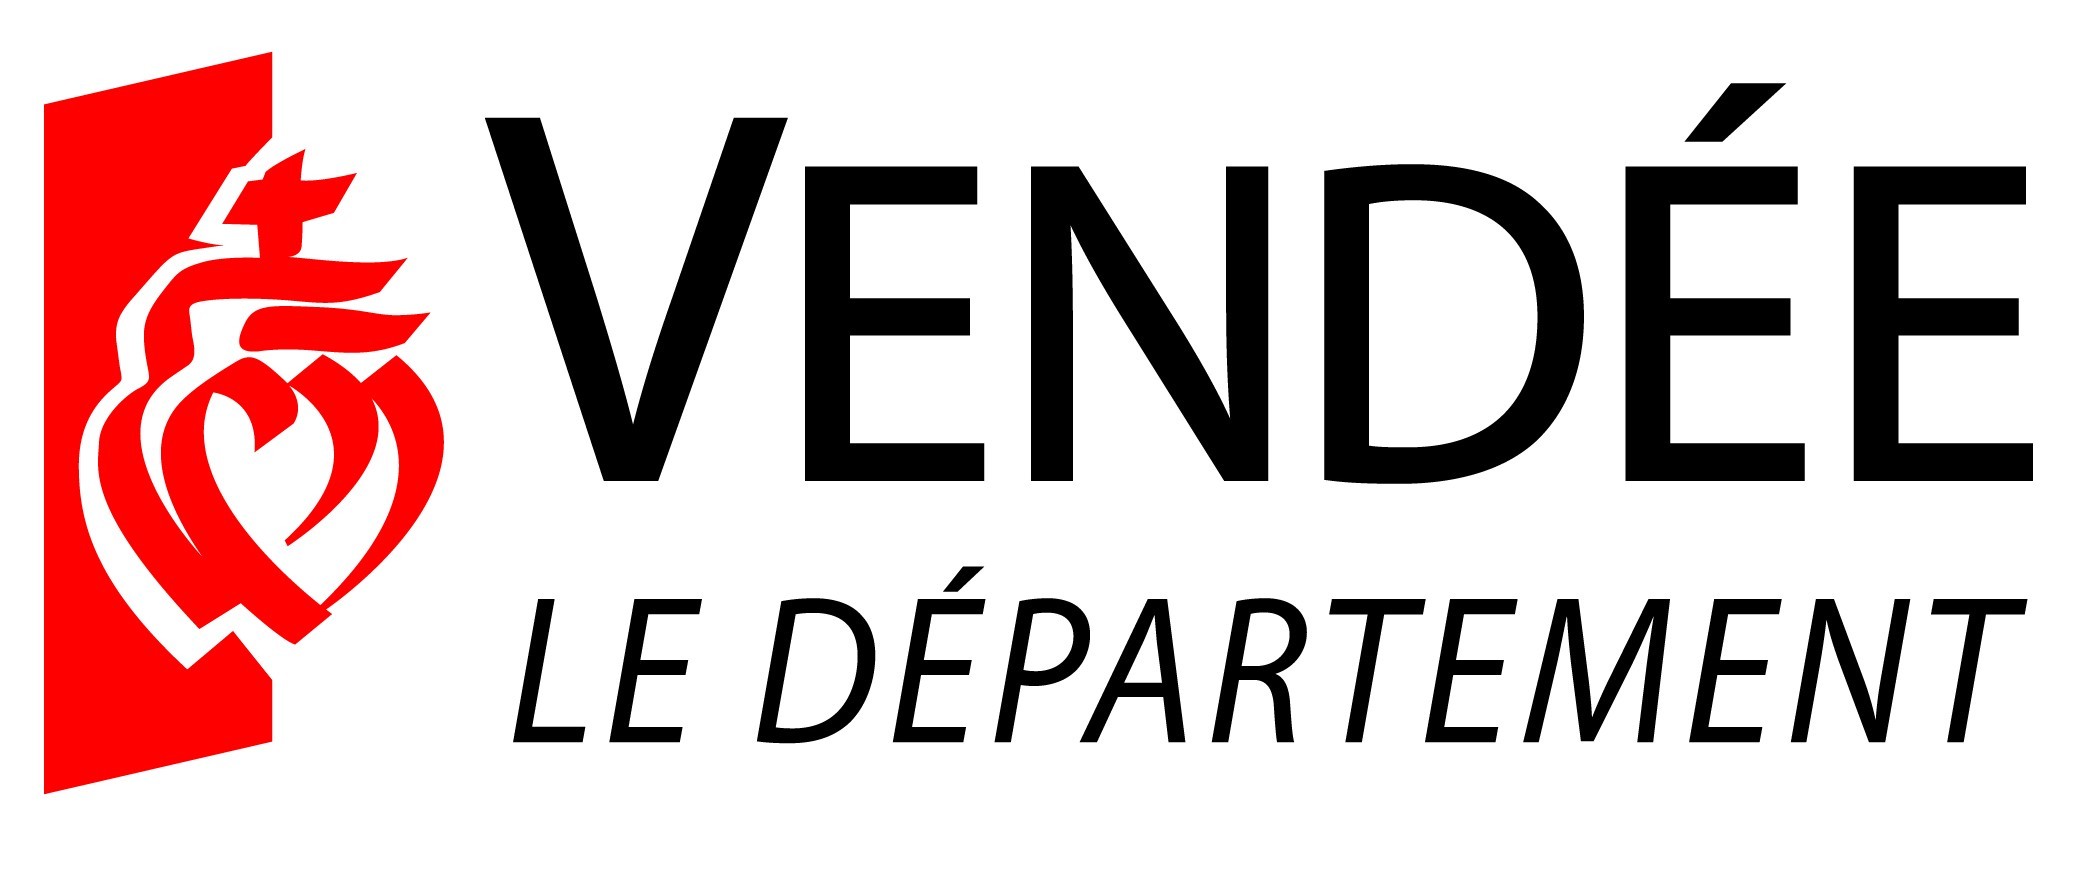 Teds799 - Vendée